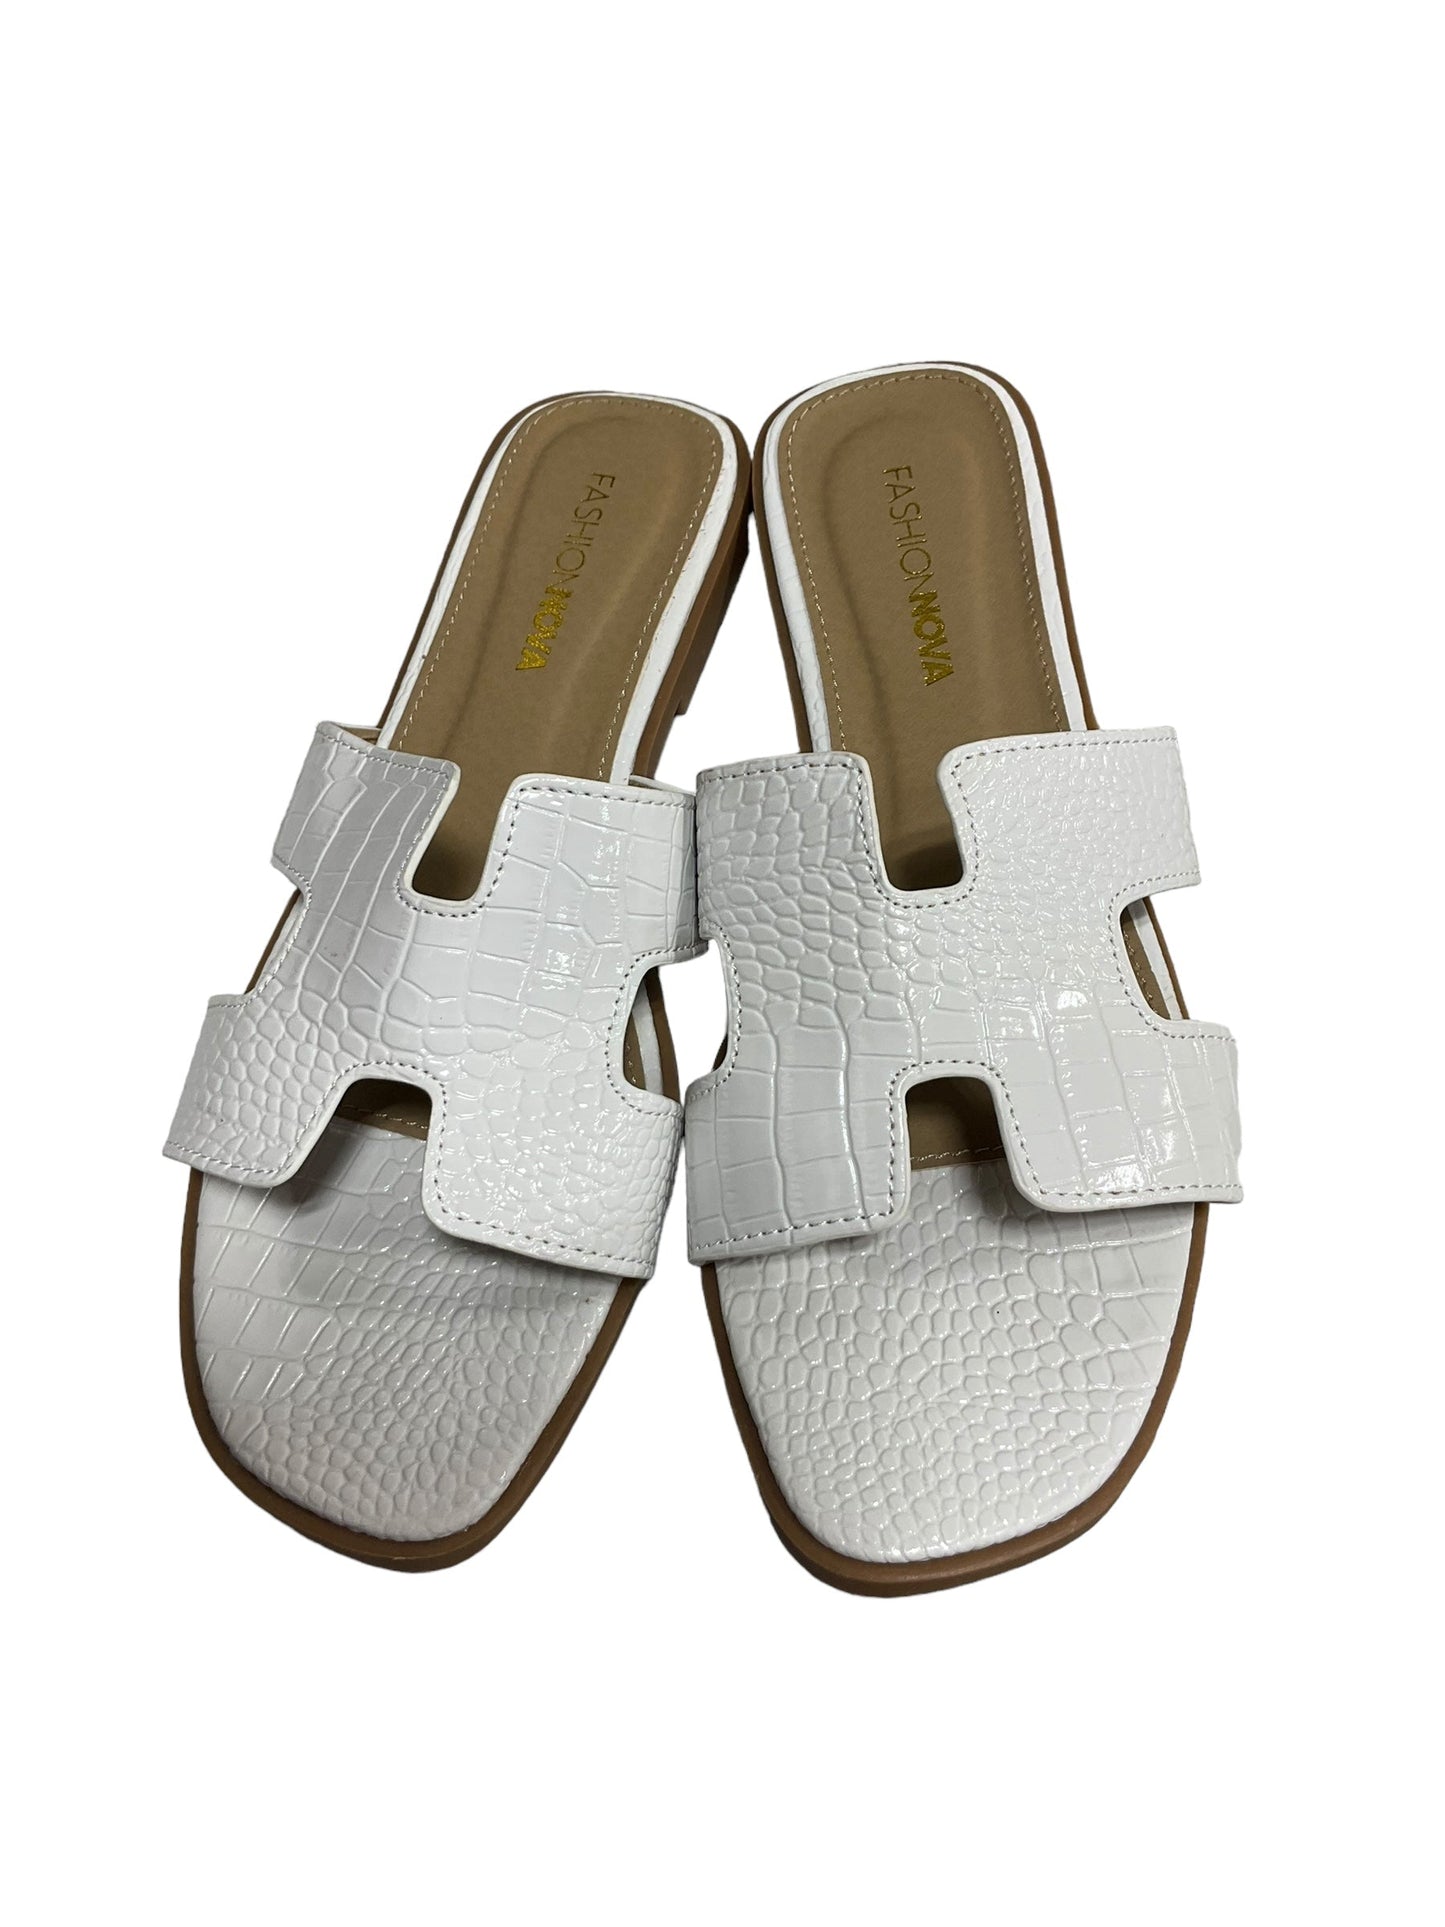 White Sandals Flats Fashion Nova, Size 11